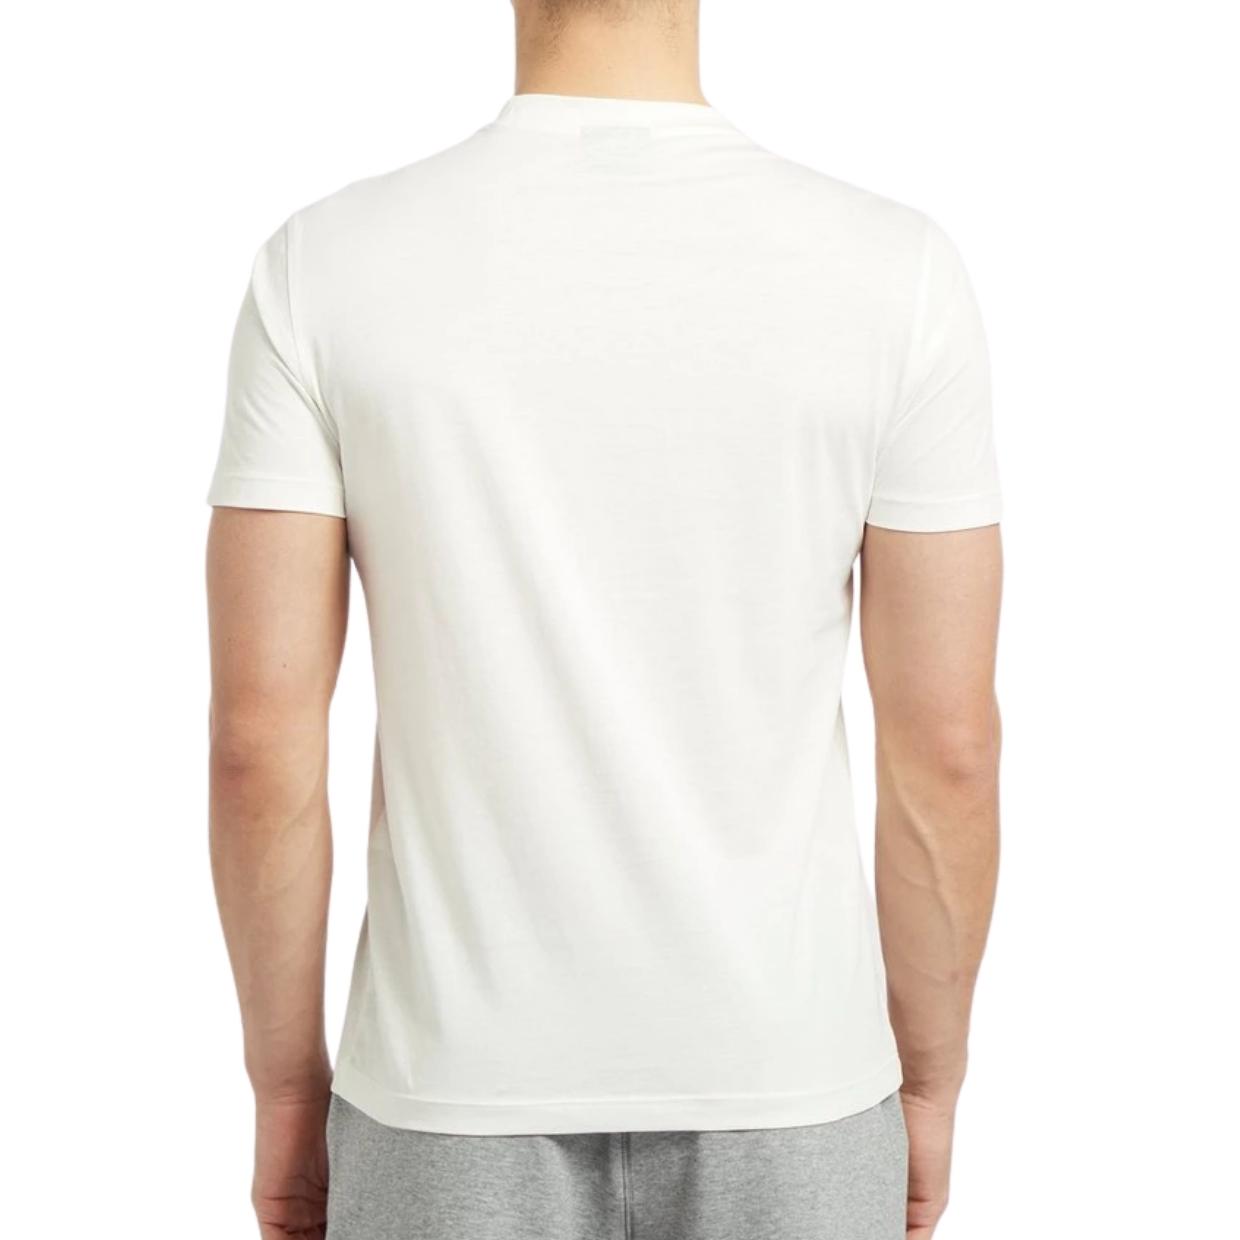 Emporio Armani White Print Eagle Pixel Logo T-Shirt